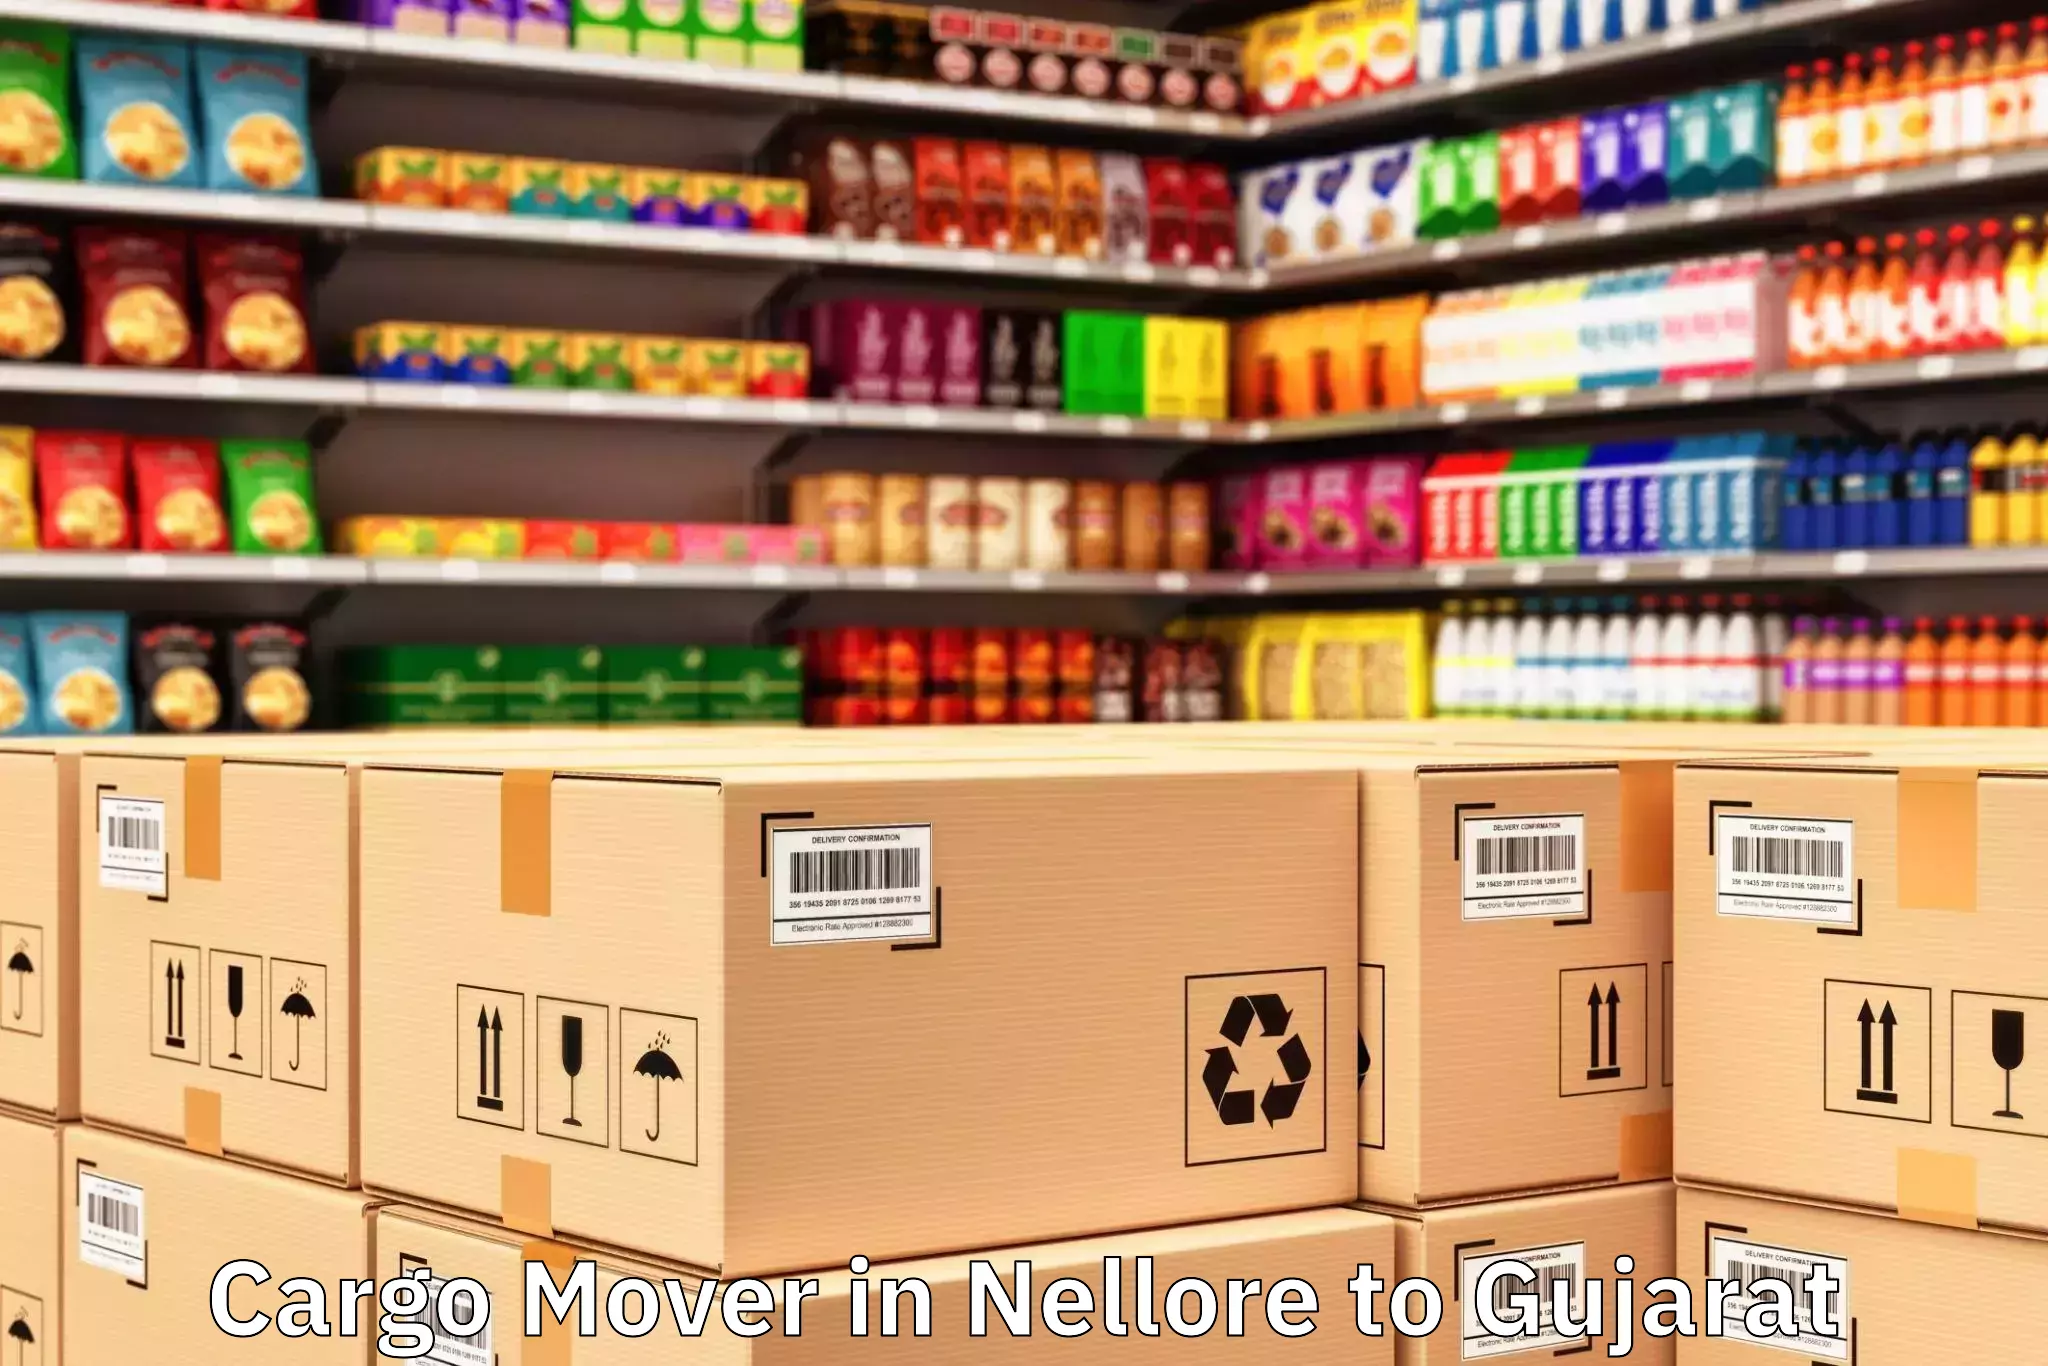 Efficient Nellore to Kodinar Cargo Mover